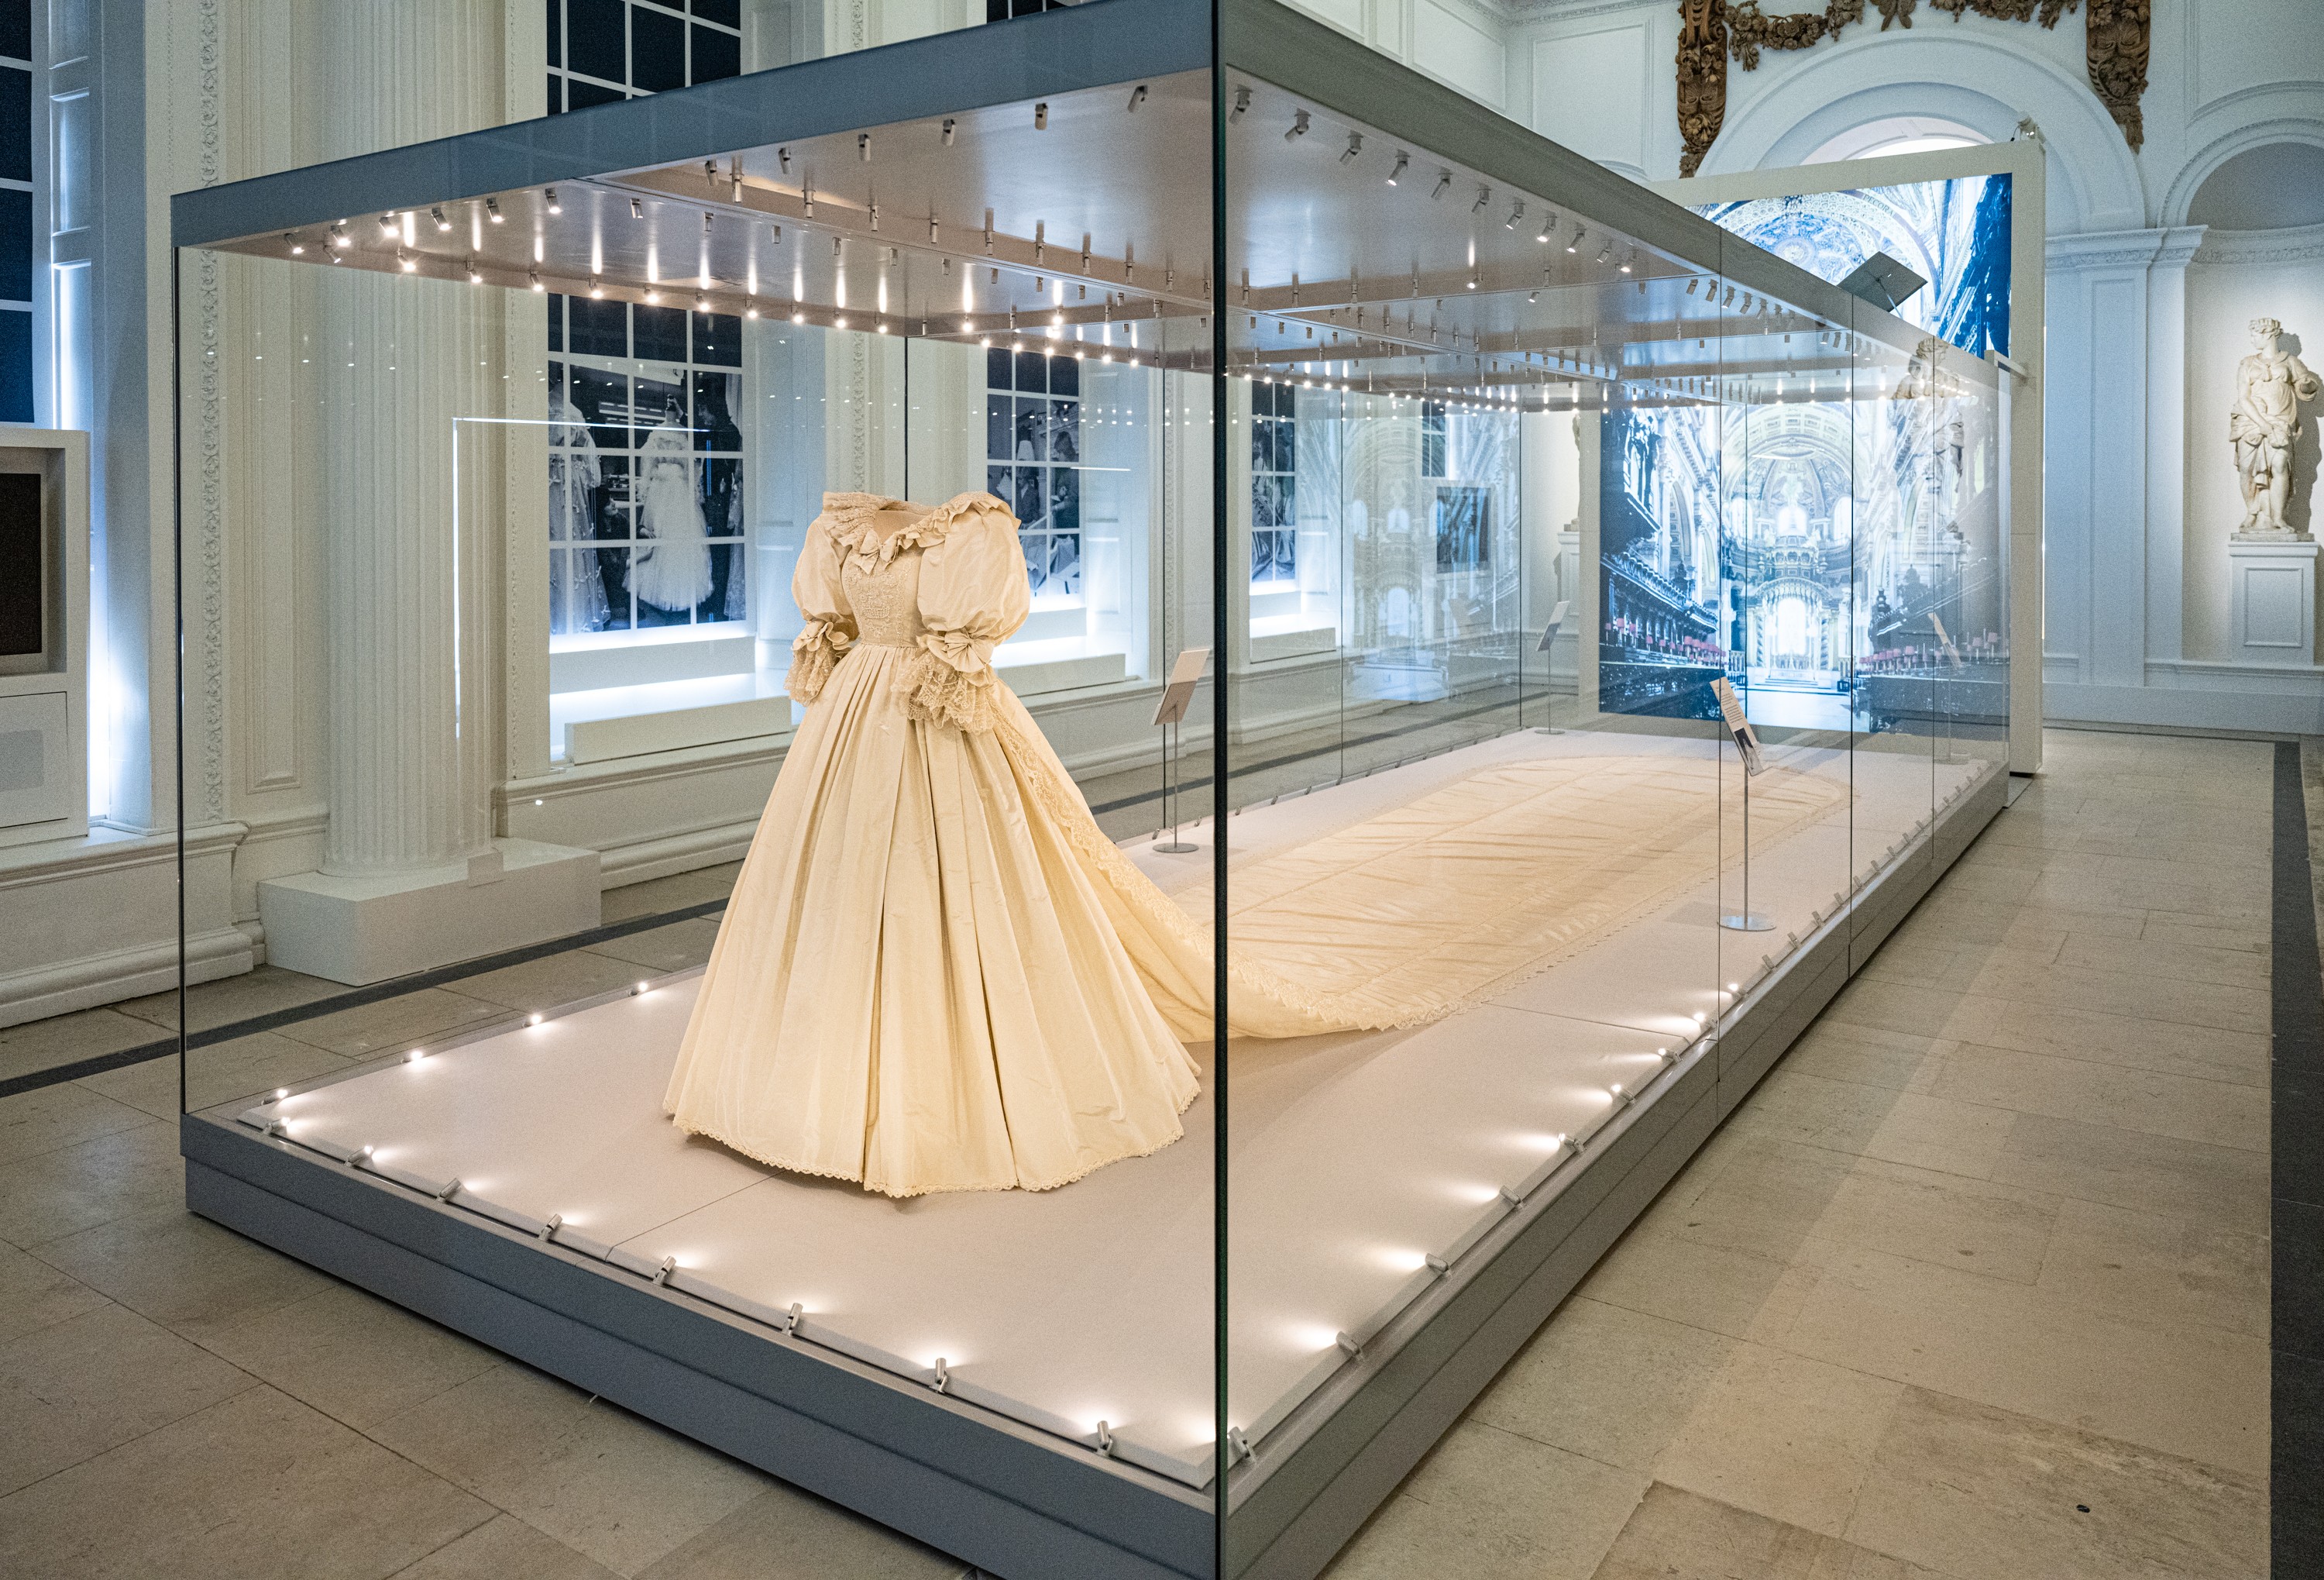 O vestido de casamento da Princesa Diana (1961-1997) em exposição no Palácio de Kensington (Foto: Getty Images)